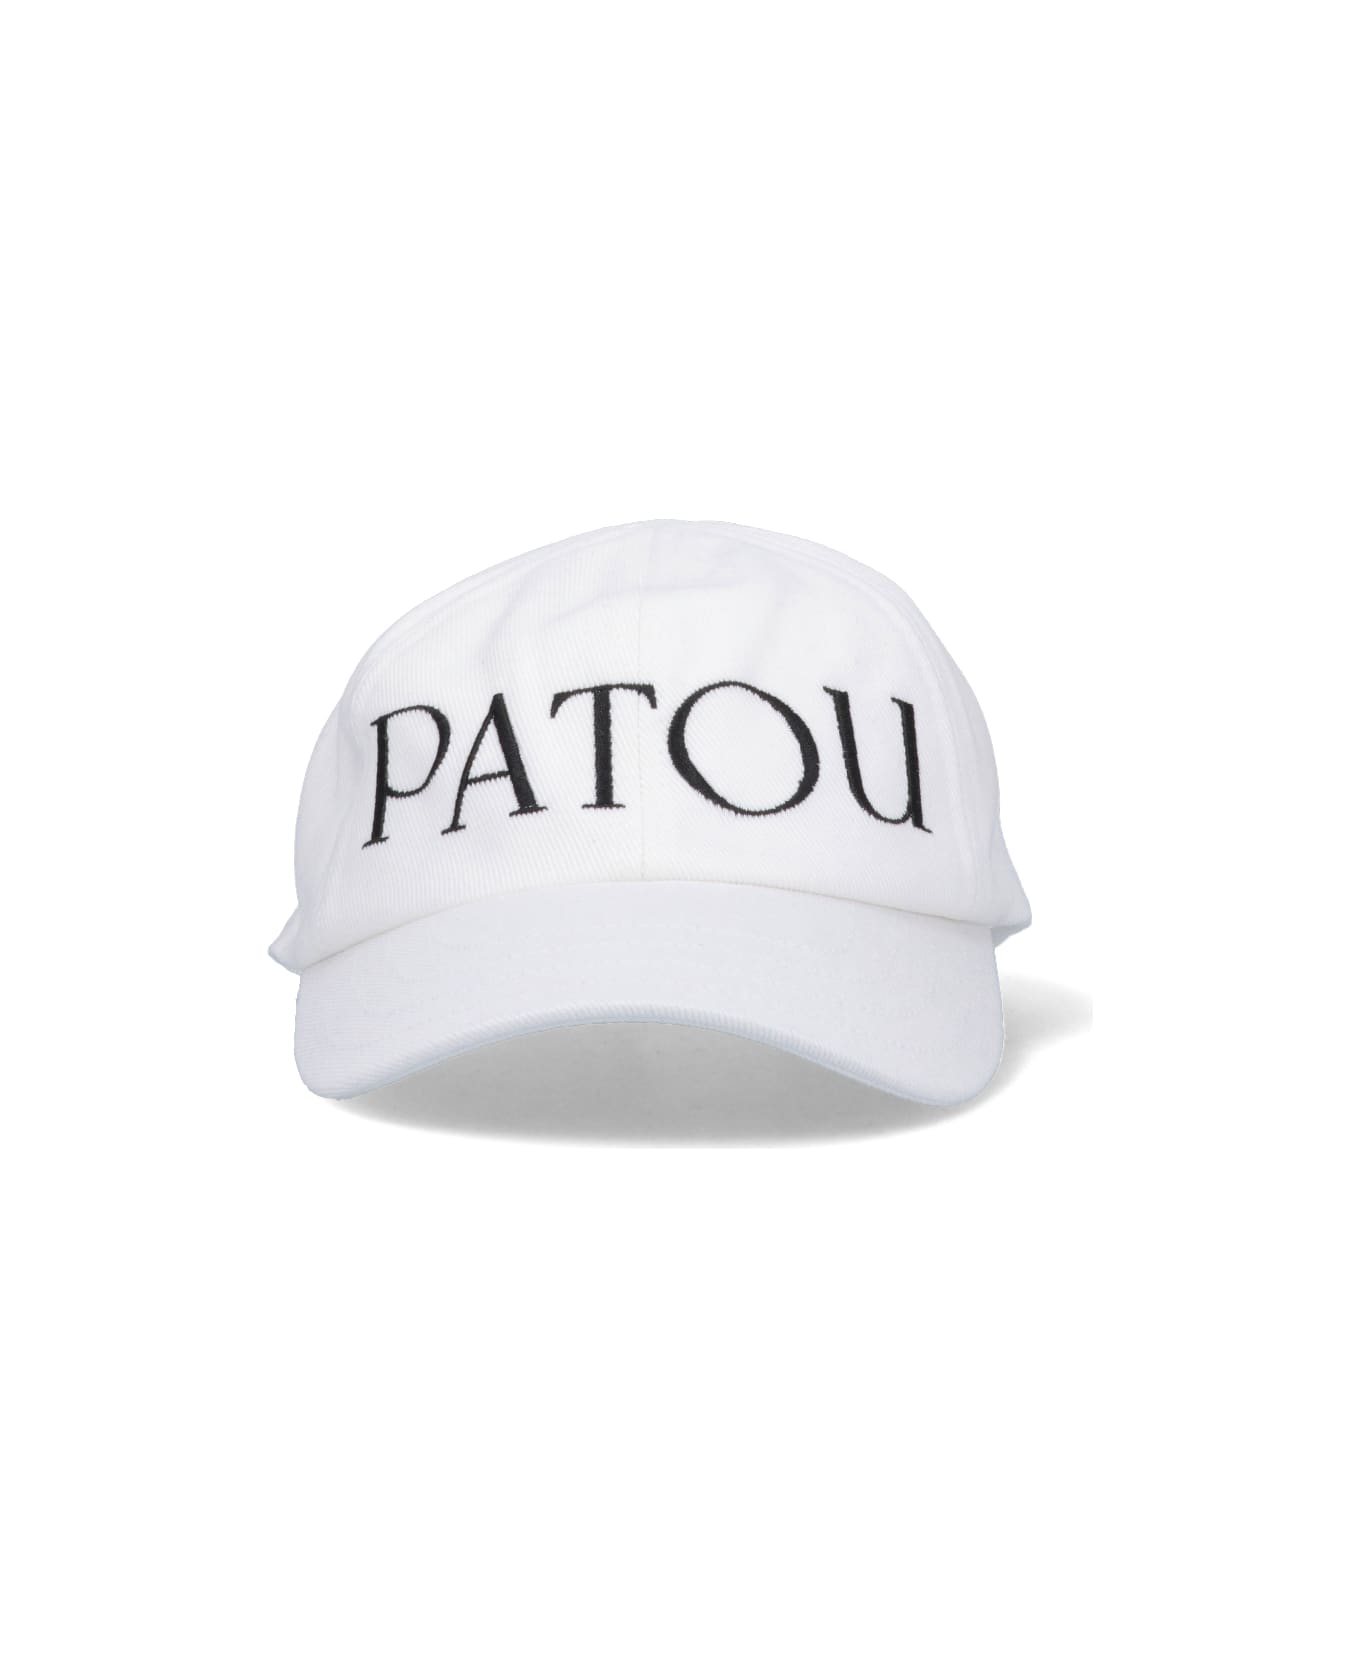 Patou Hat - C Cream